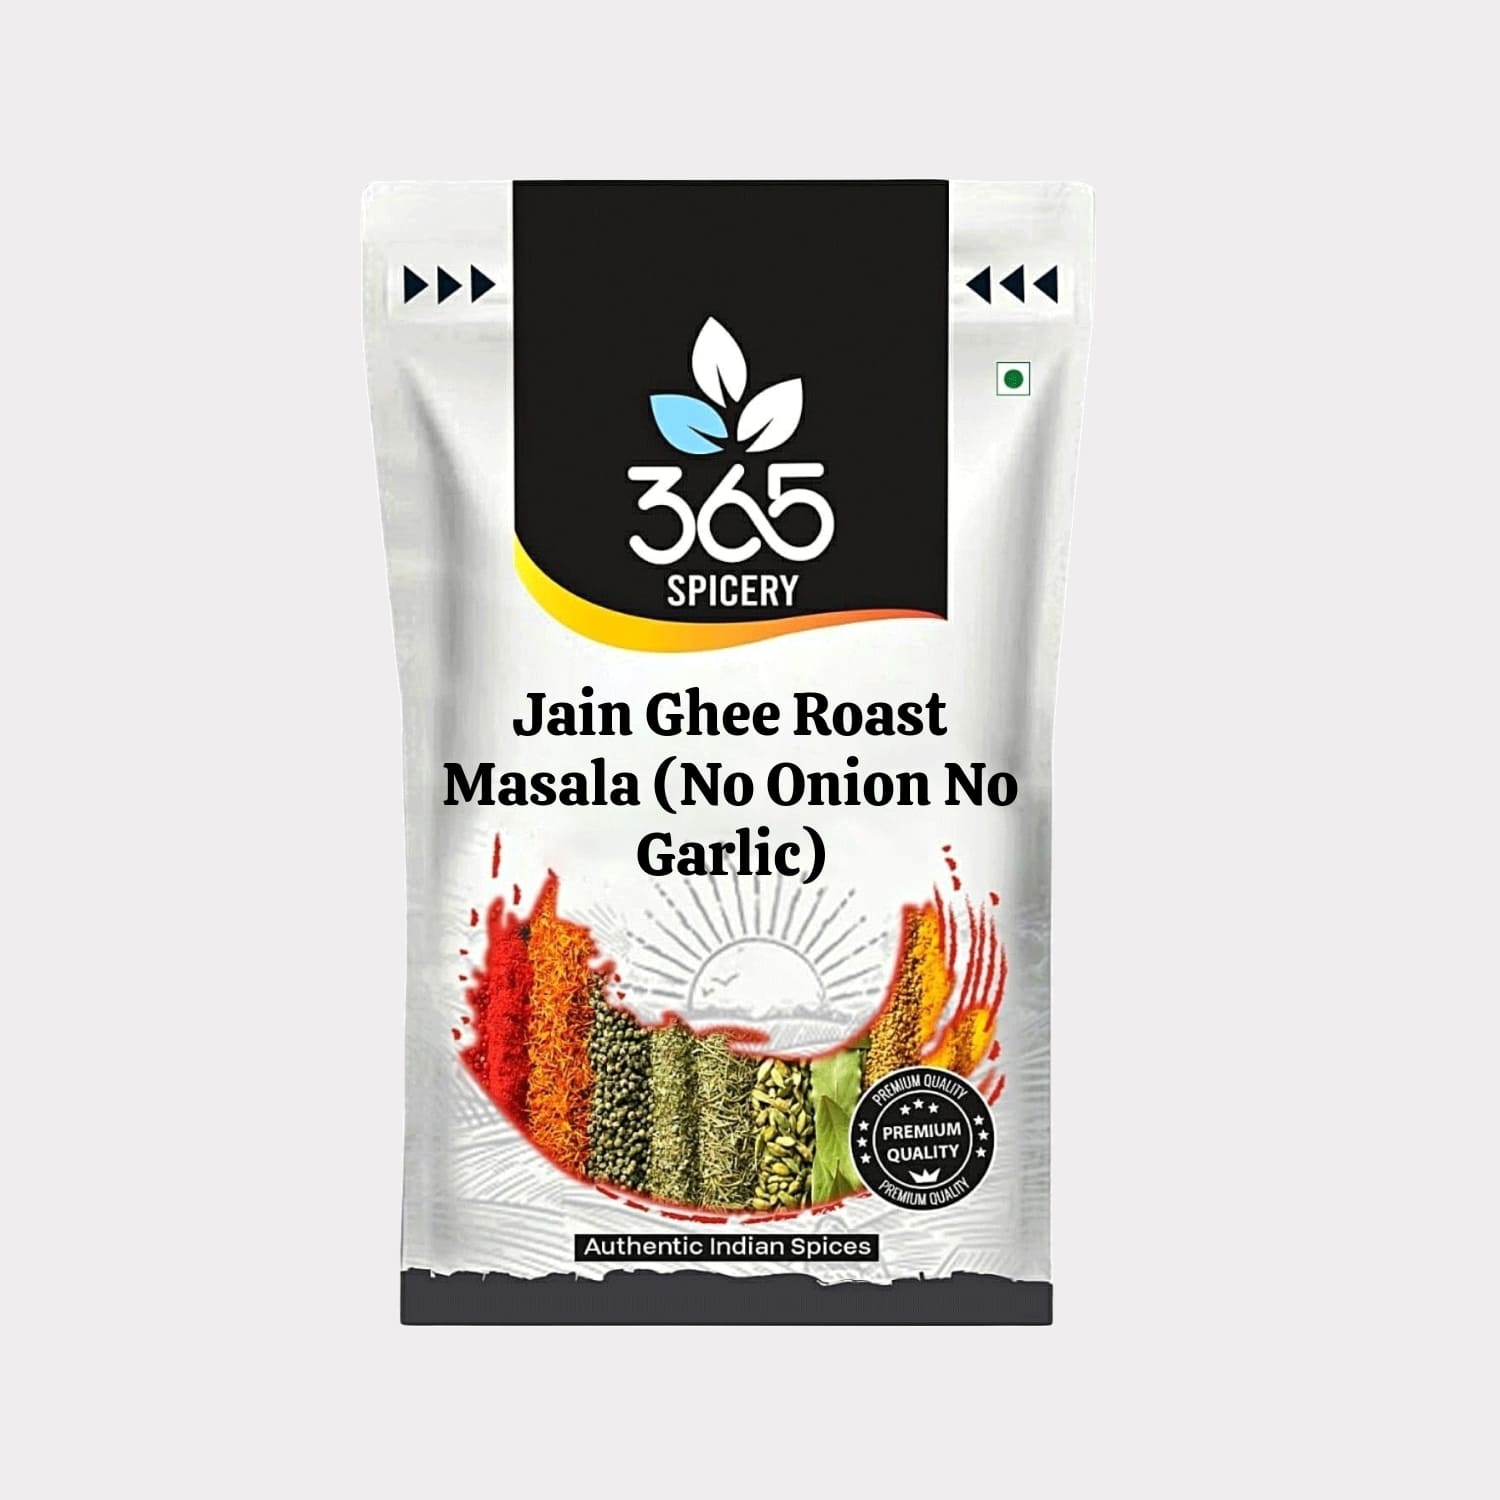 Jain Ghee Roast Masala (No Onion No Garlic)